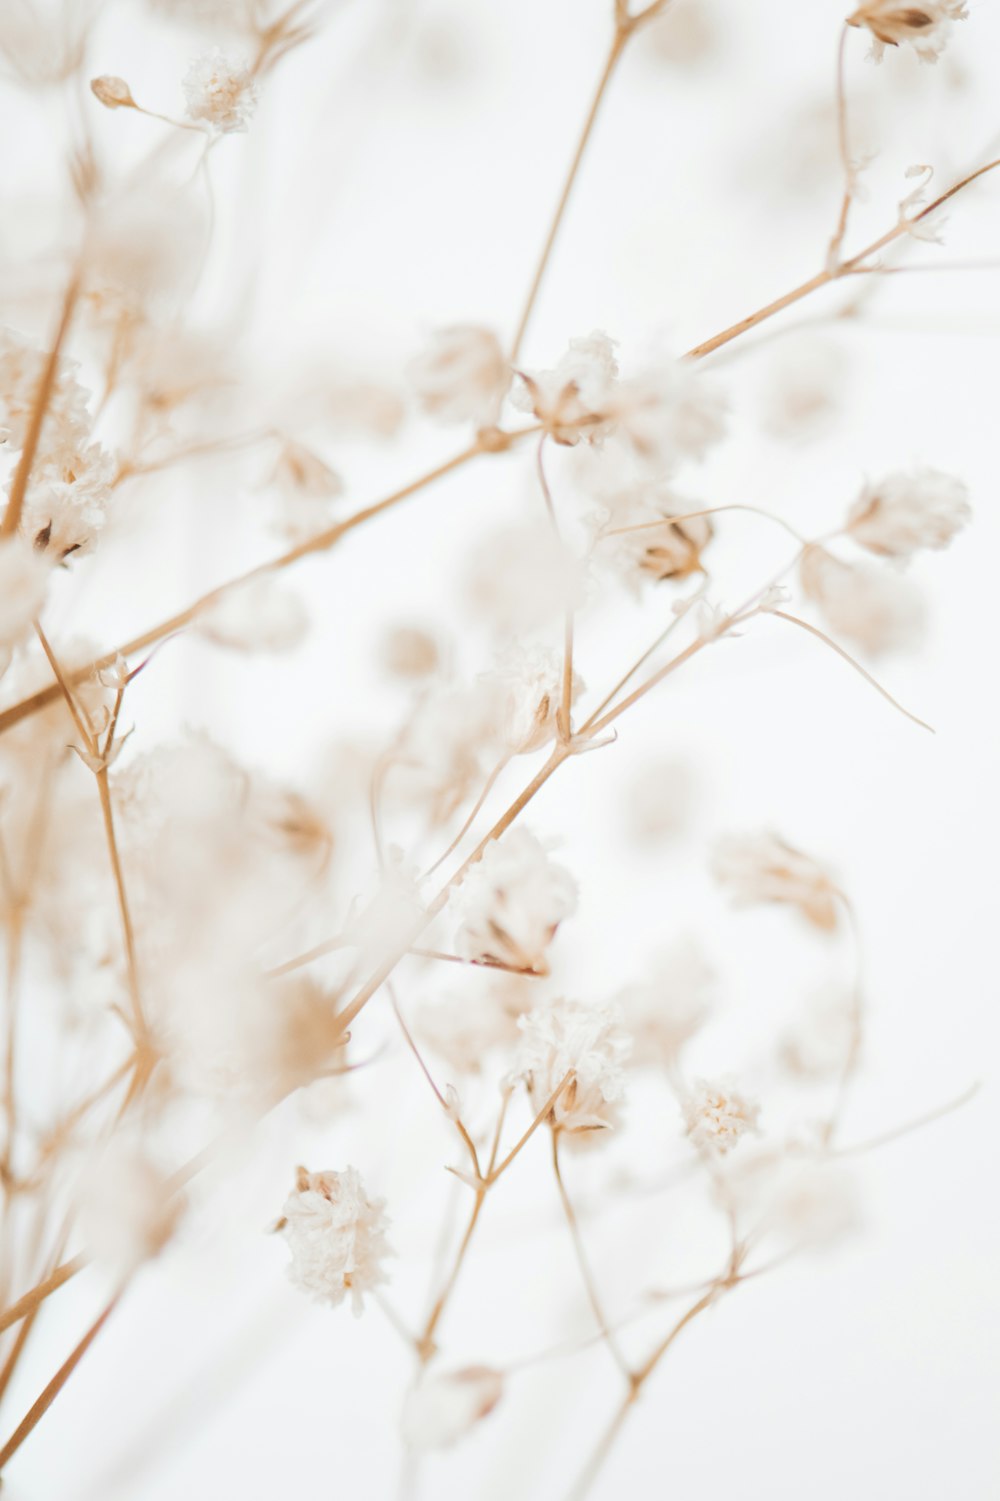 fiori bianchi in lente tilt shift